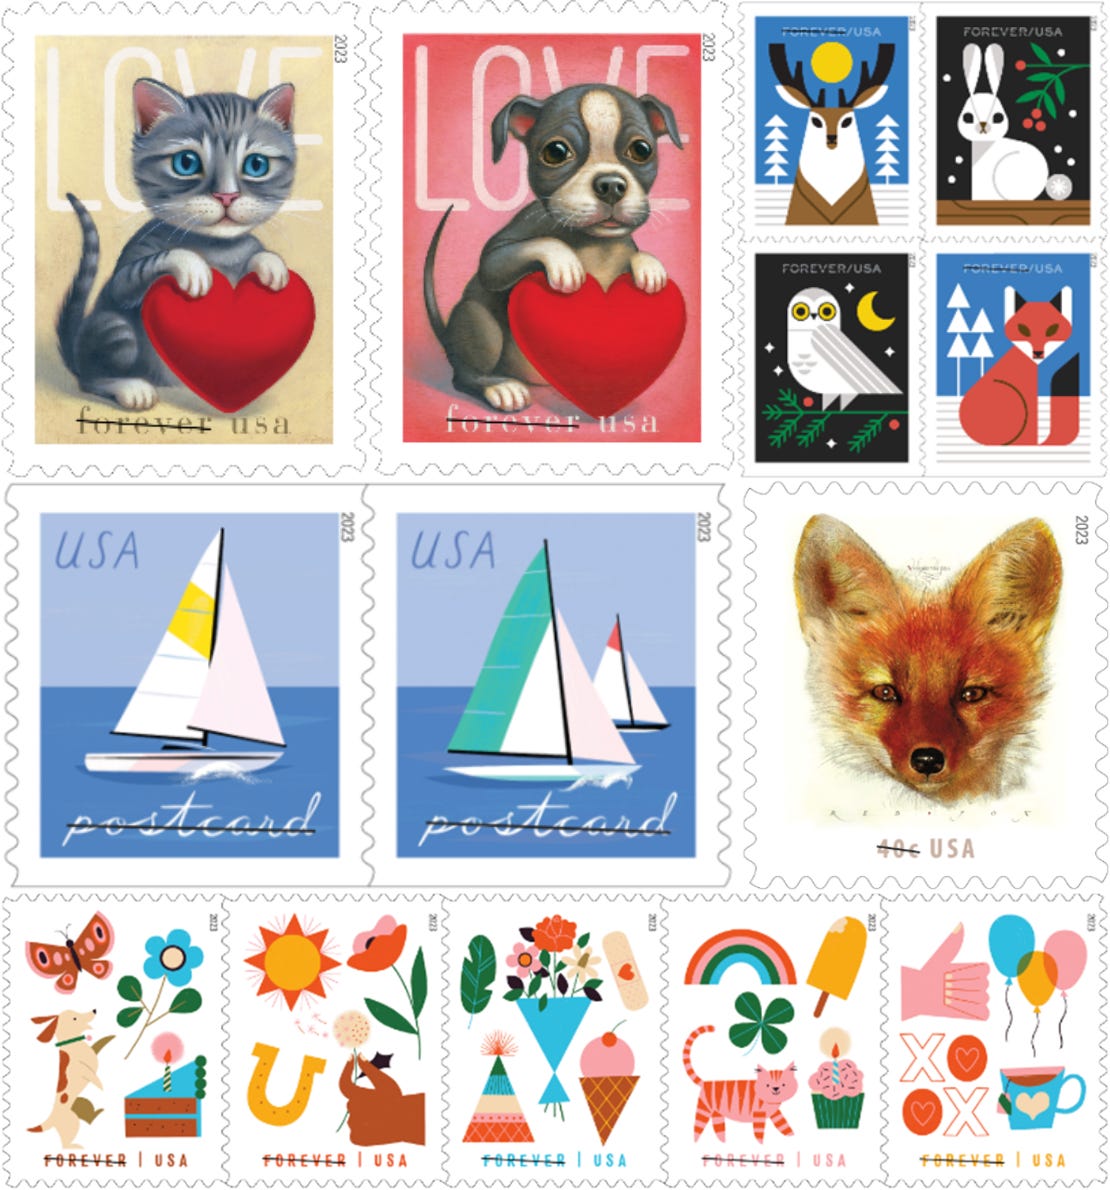 Roy Lichtenstein Stamps